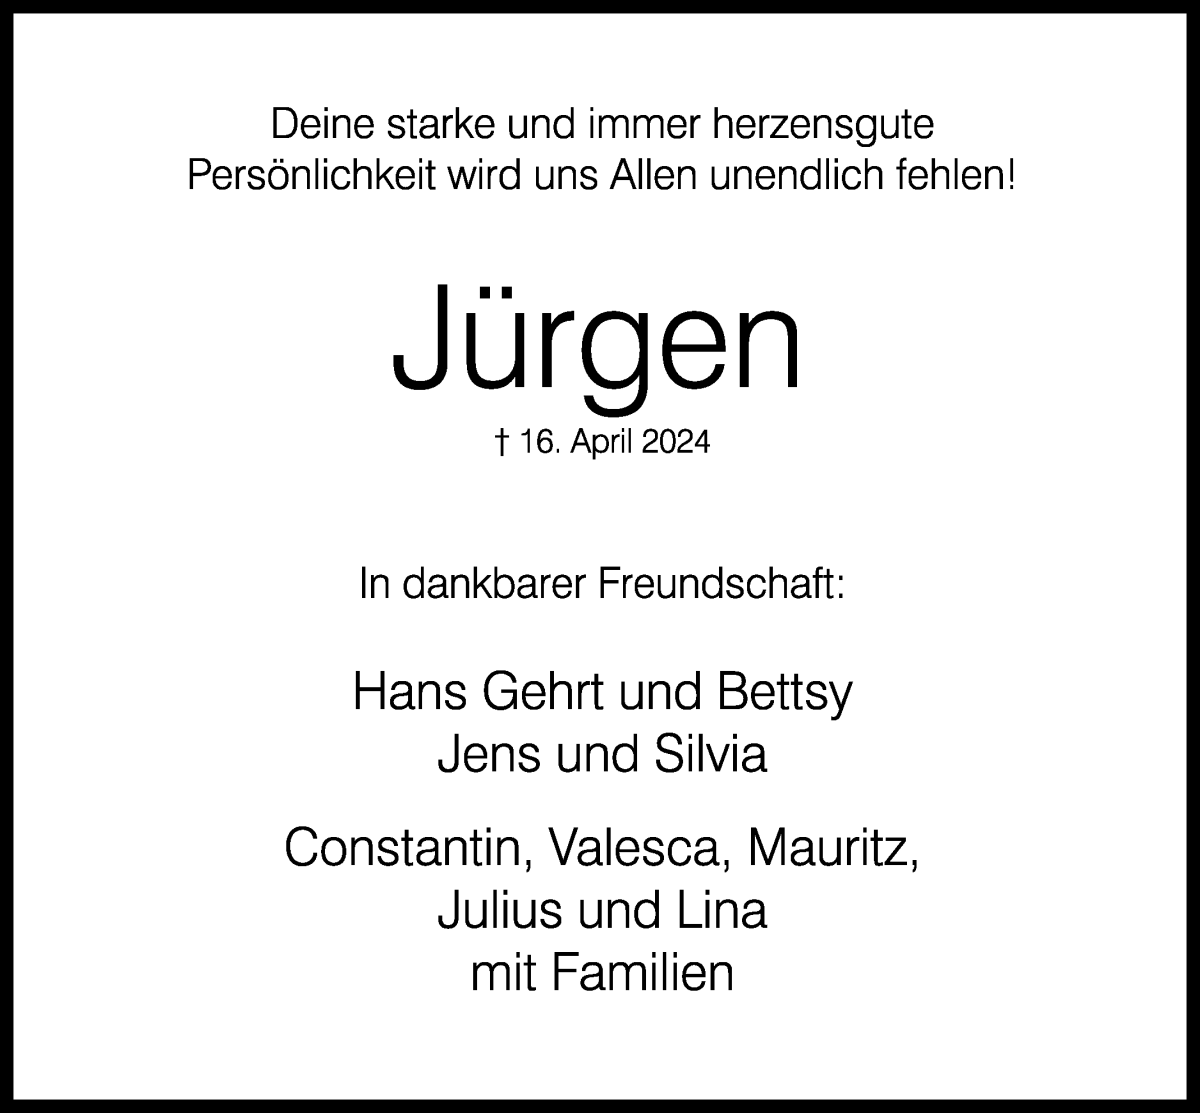  Traueranzeige für Jürgen Roggemann vom 27.04.2024 aus WESER-KURIER